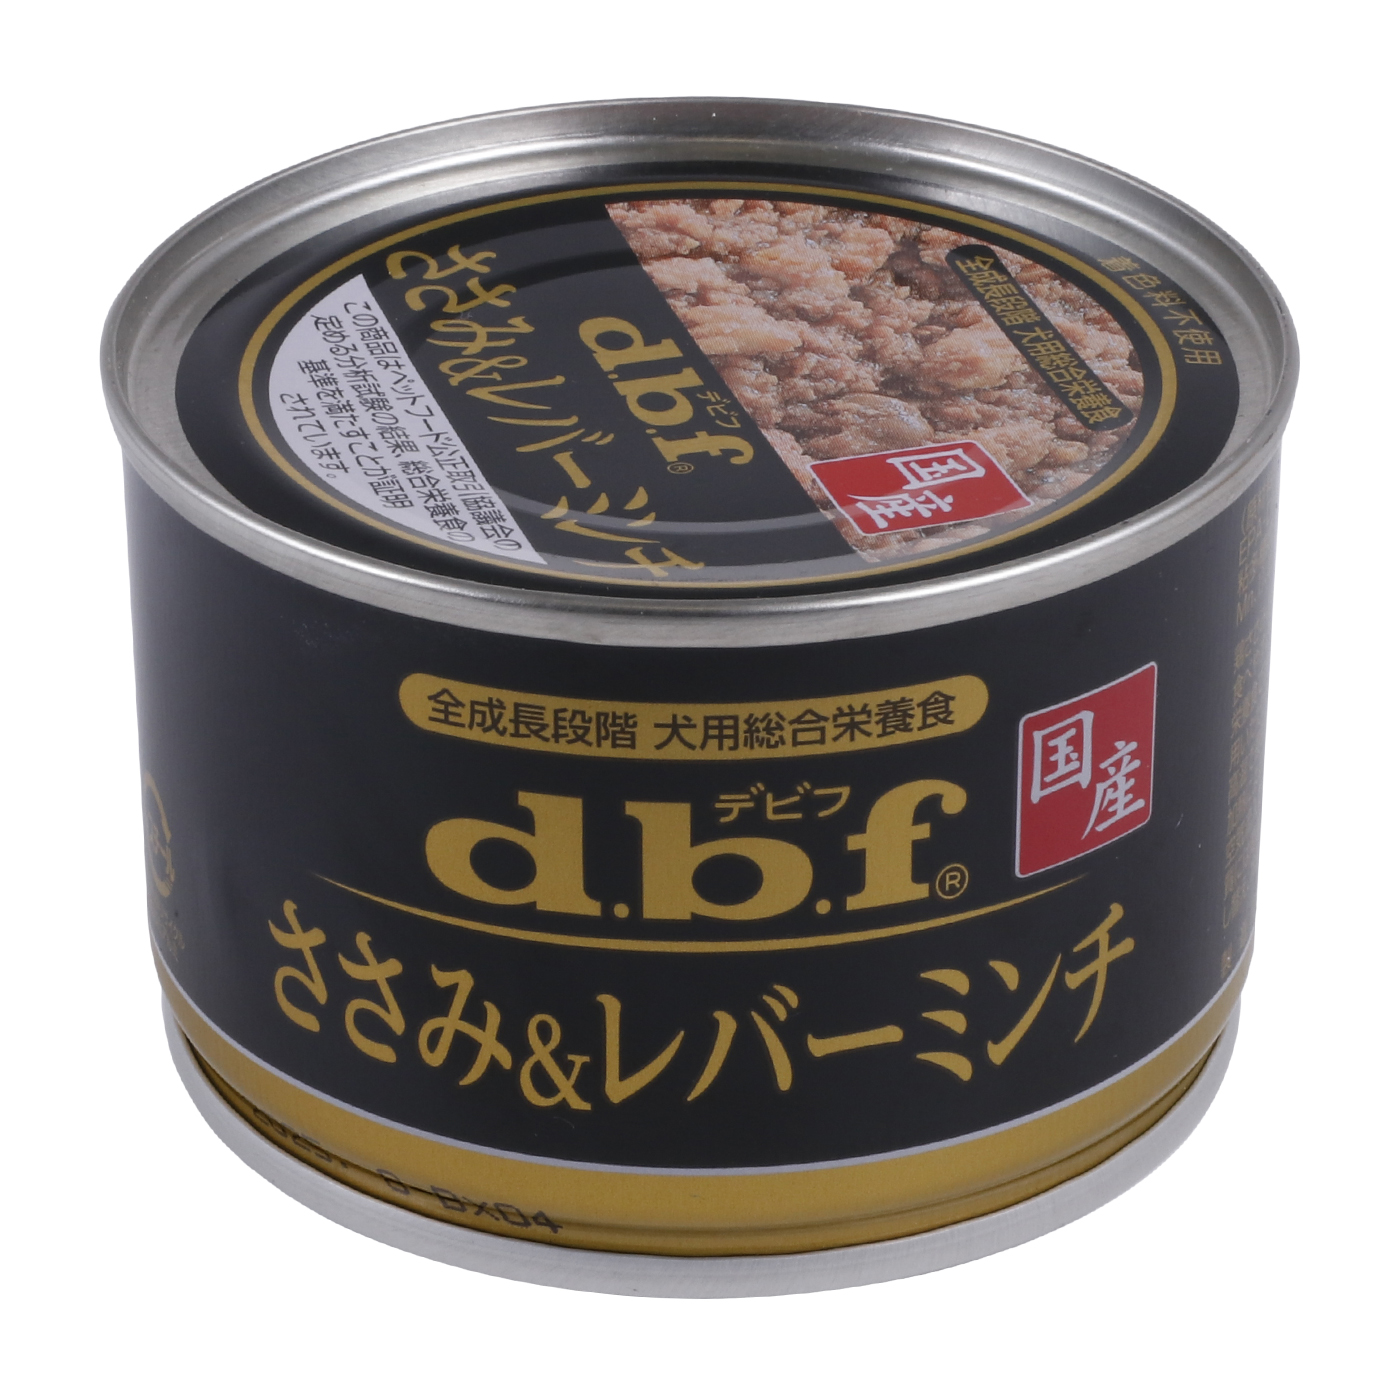 デビフ dbf ささみチーズ 缶詰 - ペットフード